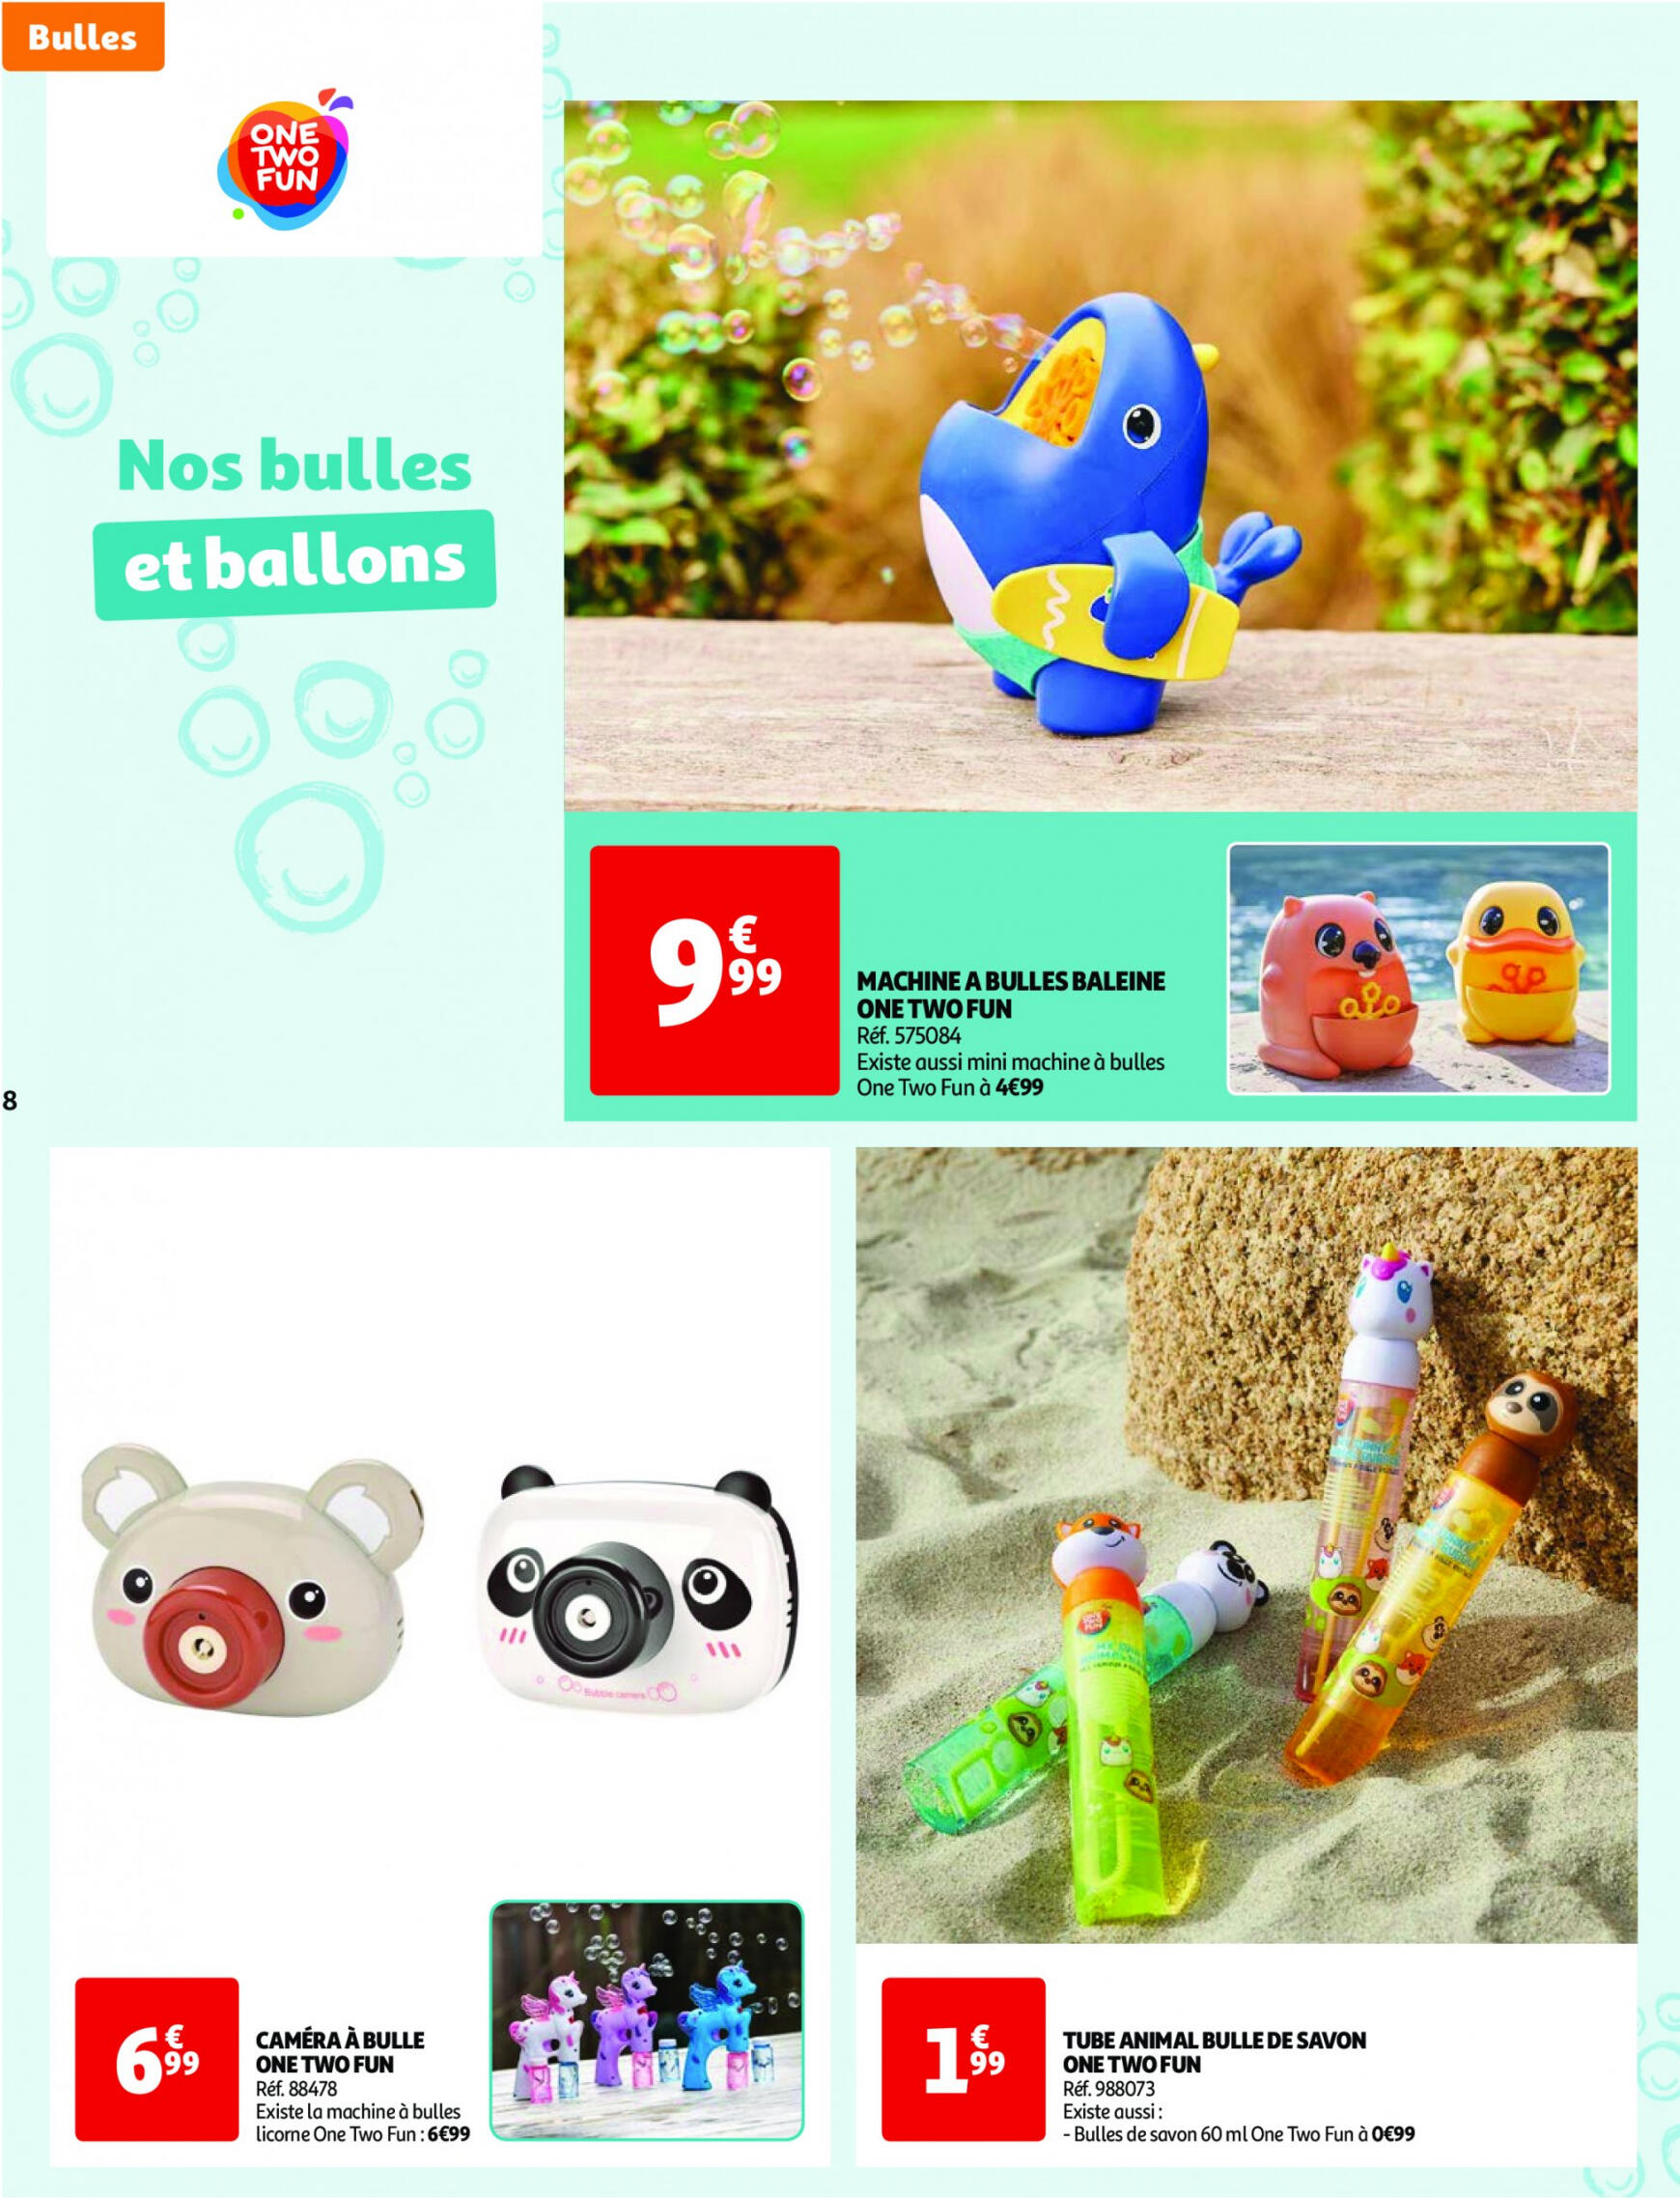 auchan - Auchan - Nos exclusivités Summer pour s'amuser tout l'été folder huidig 14.05. - 15.06. - page: 8